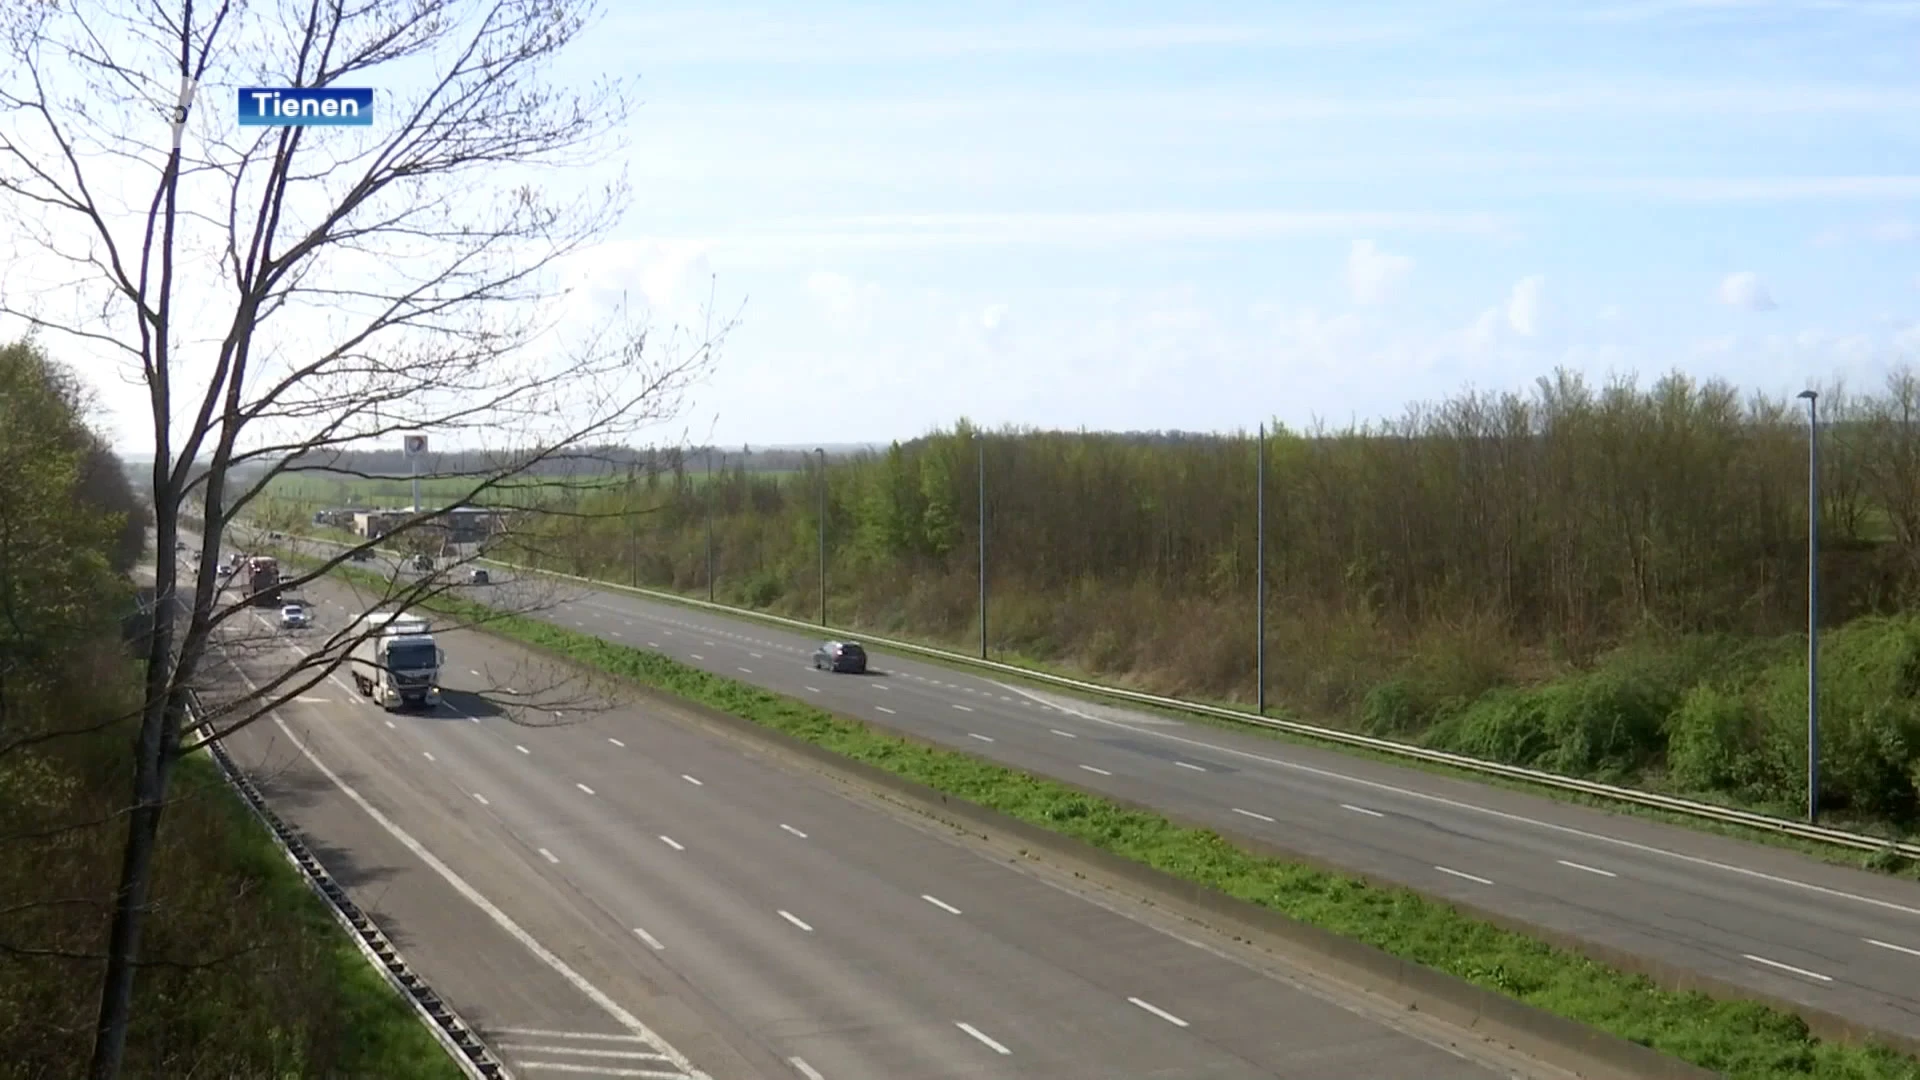 Volgend jaar wordt probleem geluidsoverlast E40 in Goetsenhoven aangepakt: "Laag asfalt over beton aanleggen"